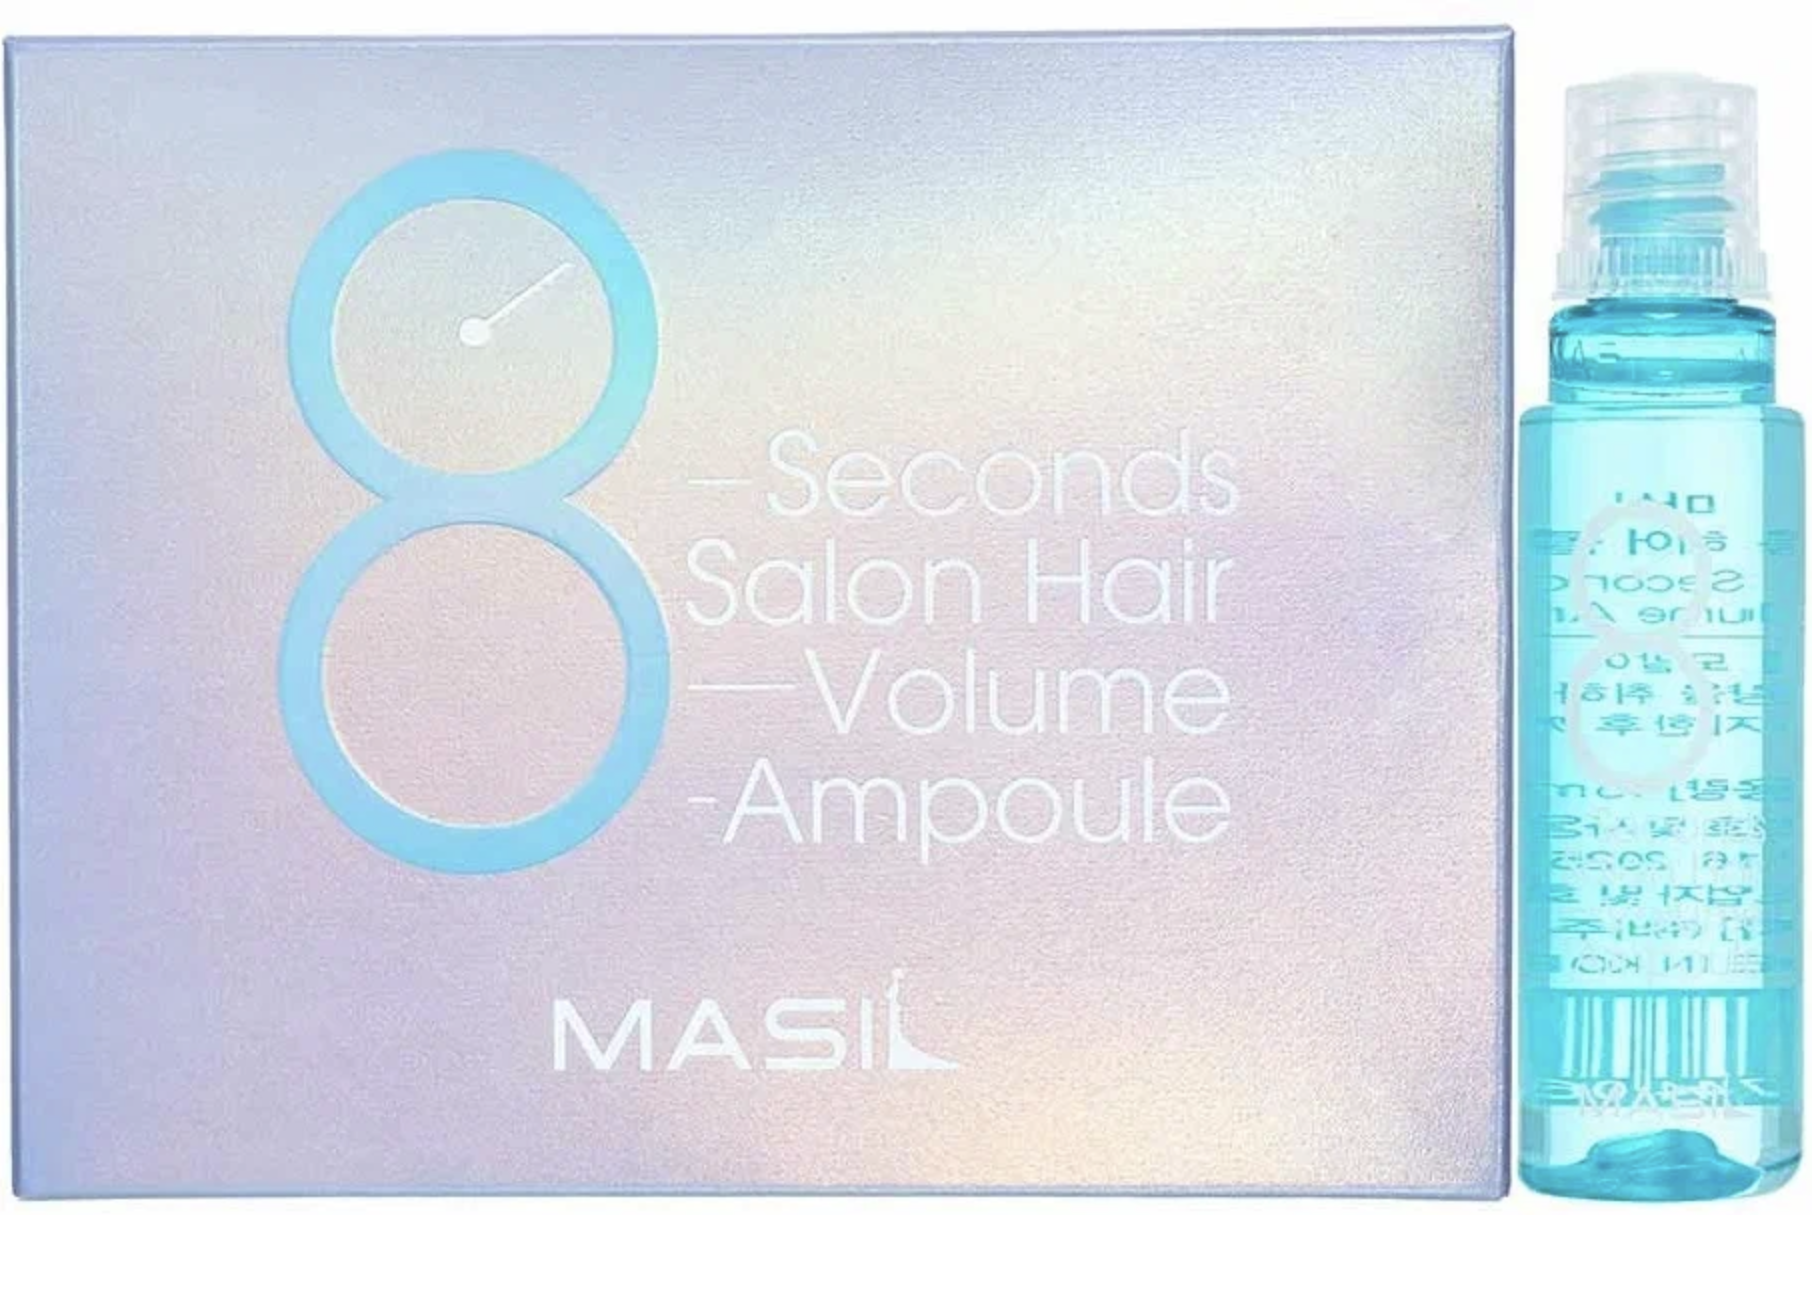   / Masil - -     8 Seconds Salon Hair Volume Ampoule 1015